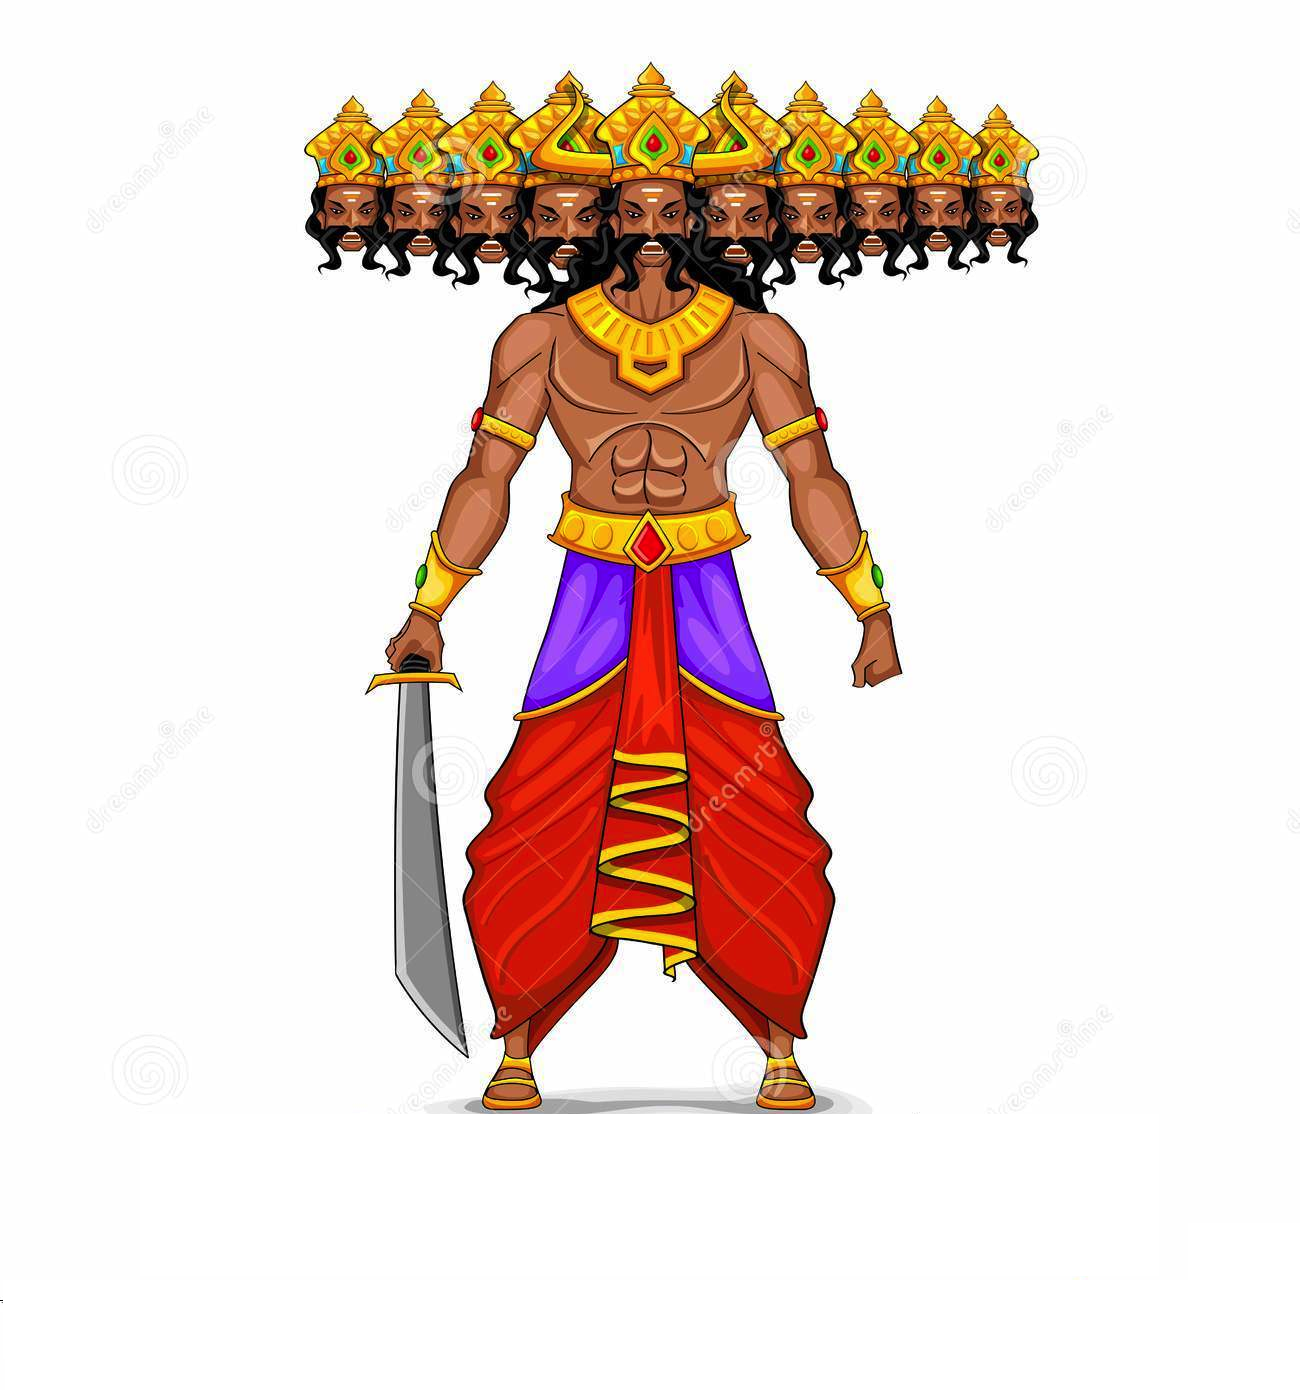 Similar Ravana PNG Image